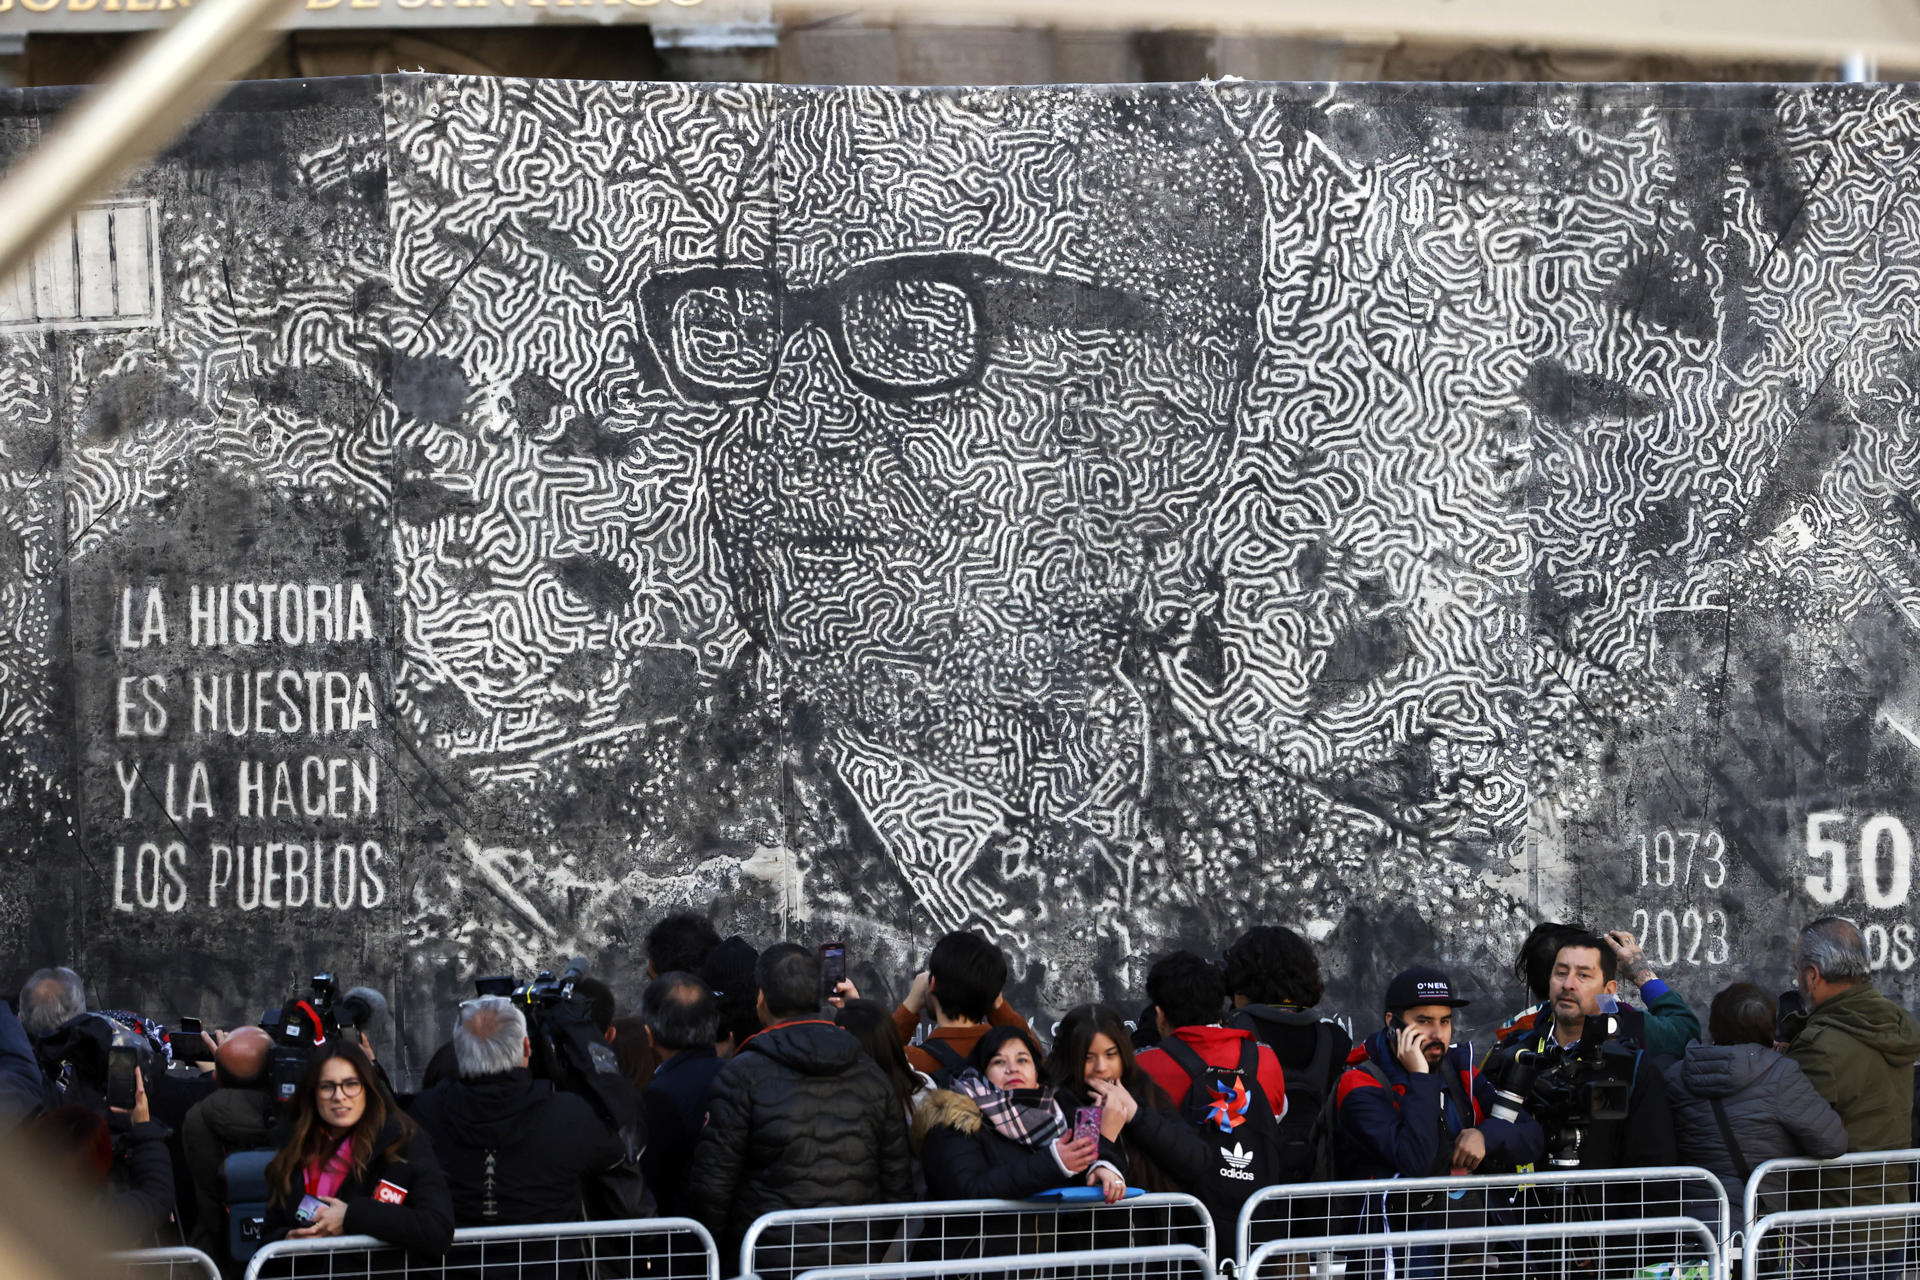 Un emotivo acto con el discurso de Allende bajo las bombas cierra la conmemoración del 50 aniversario del golpe en Chile